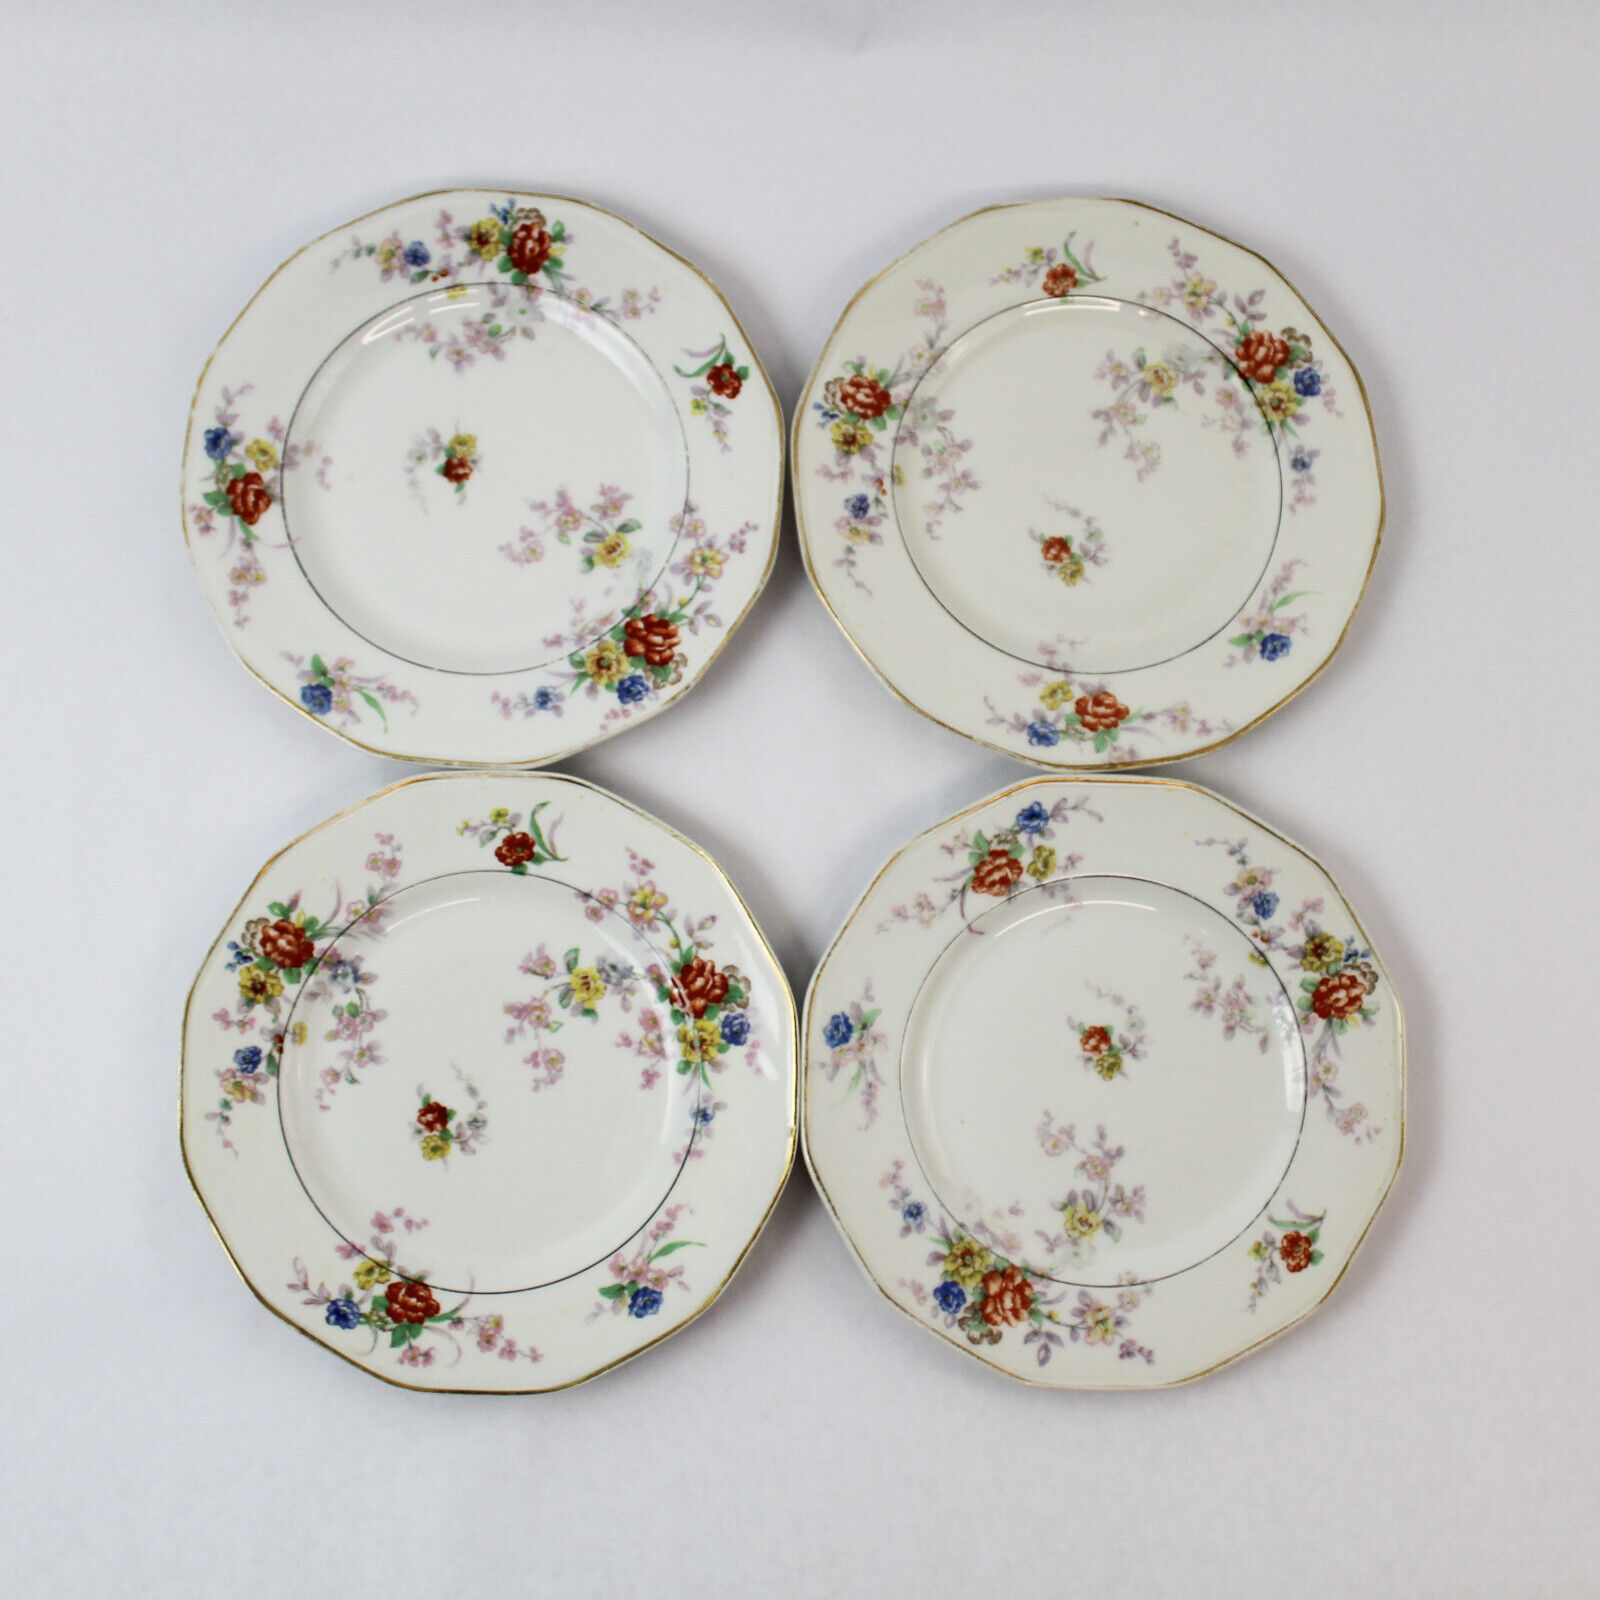 Set of 4 Vtg Theodore Haviland Limoges France Jewel Salad Plates White Floral